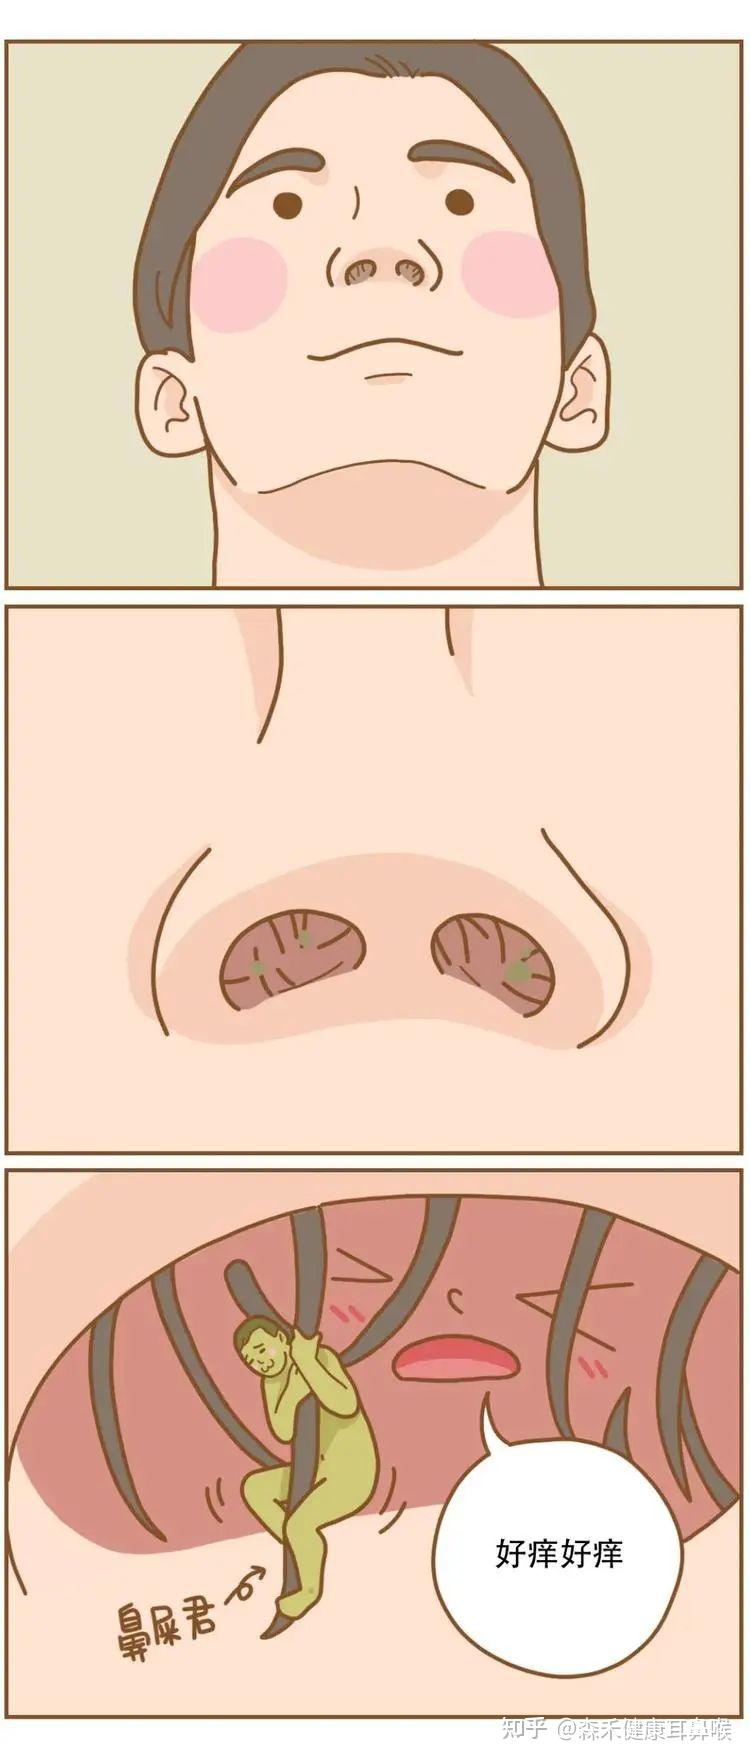 鼻腔表面黏膜图片